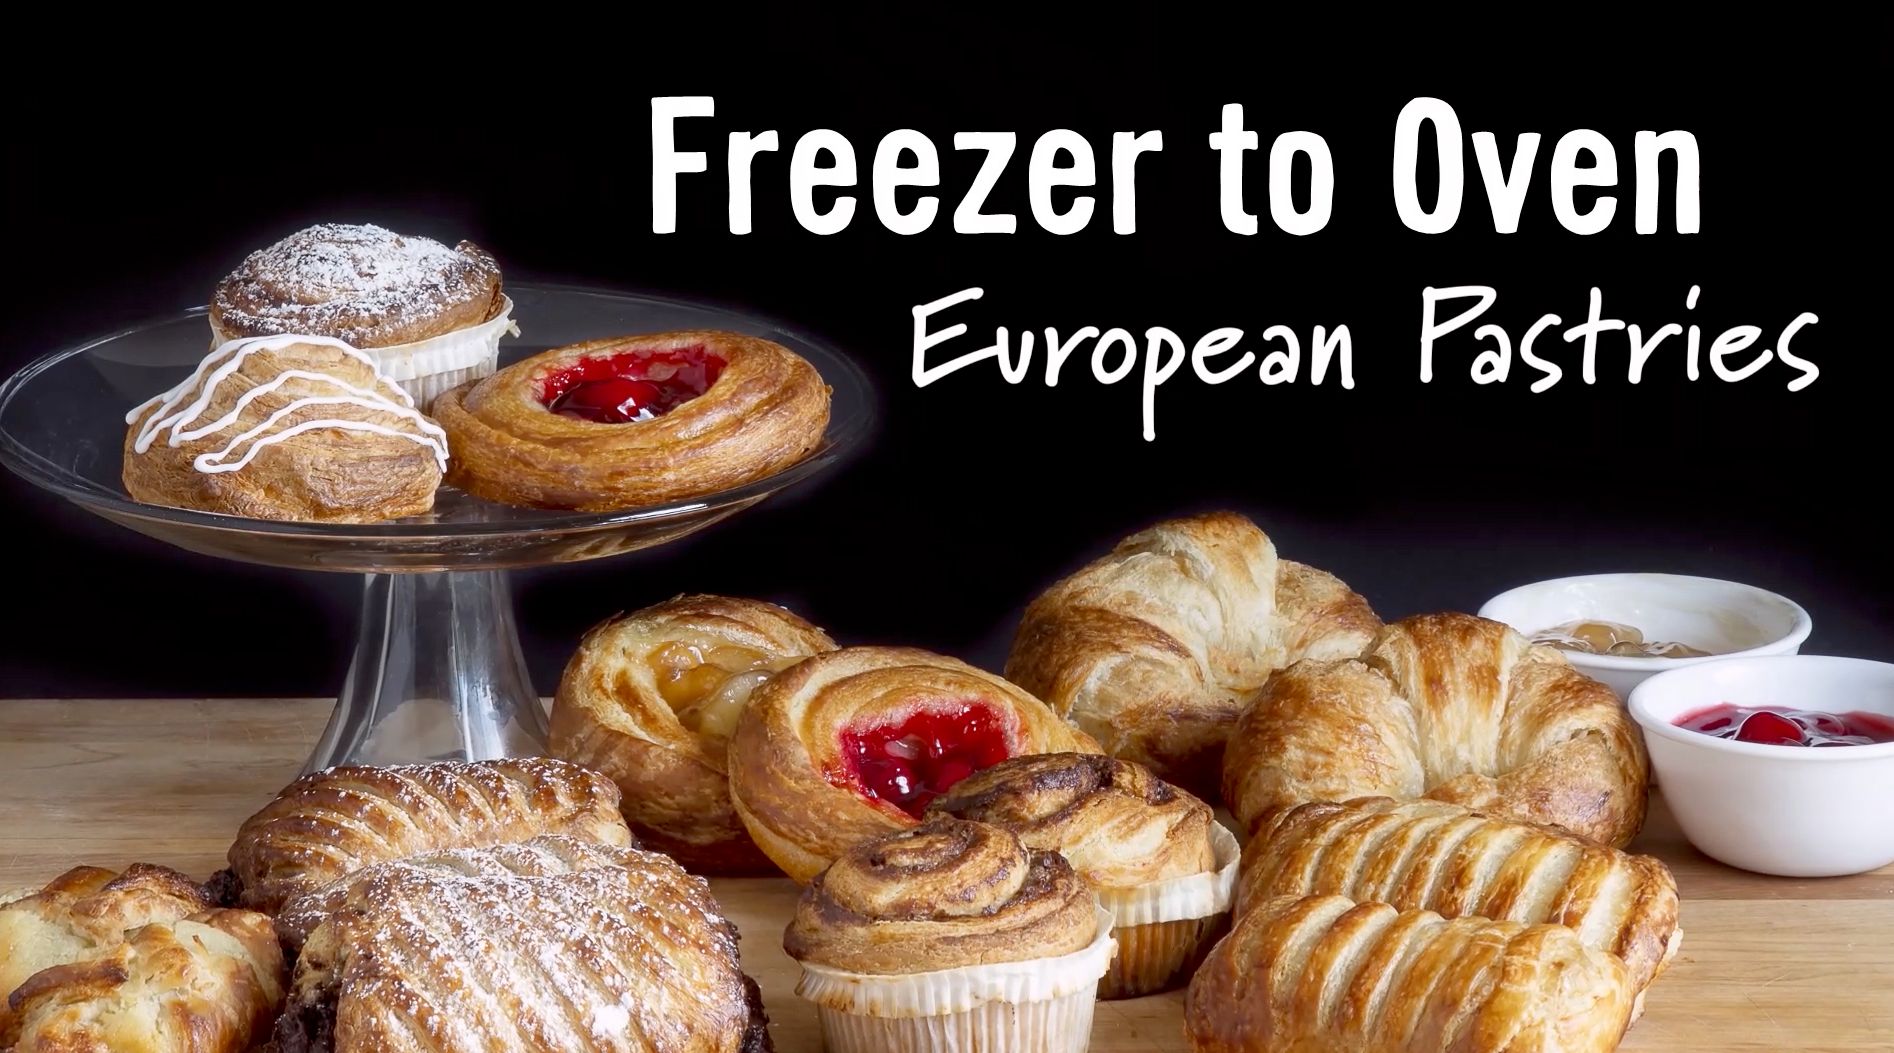 Freezer-To-Oven European Pastries